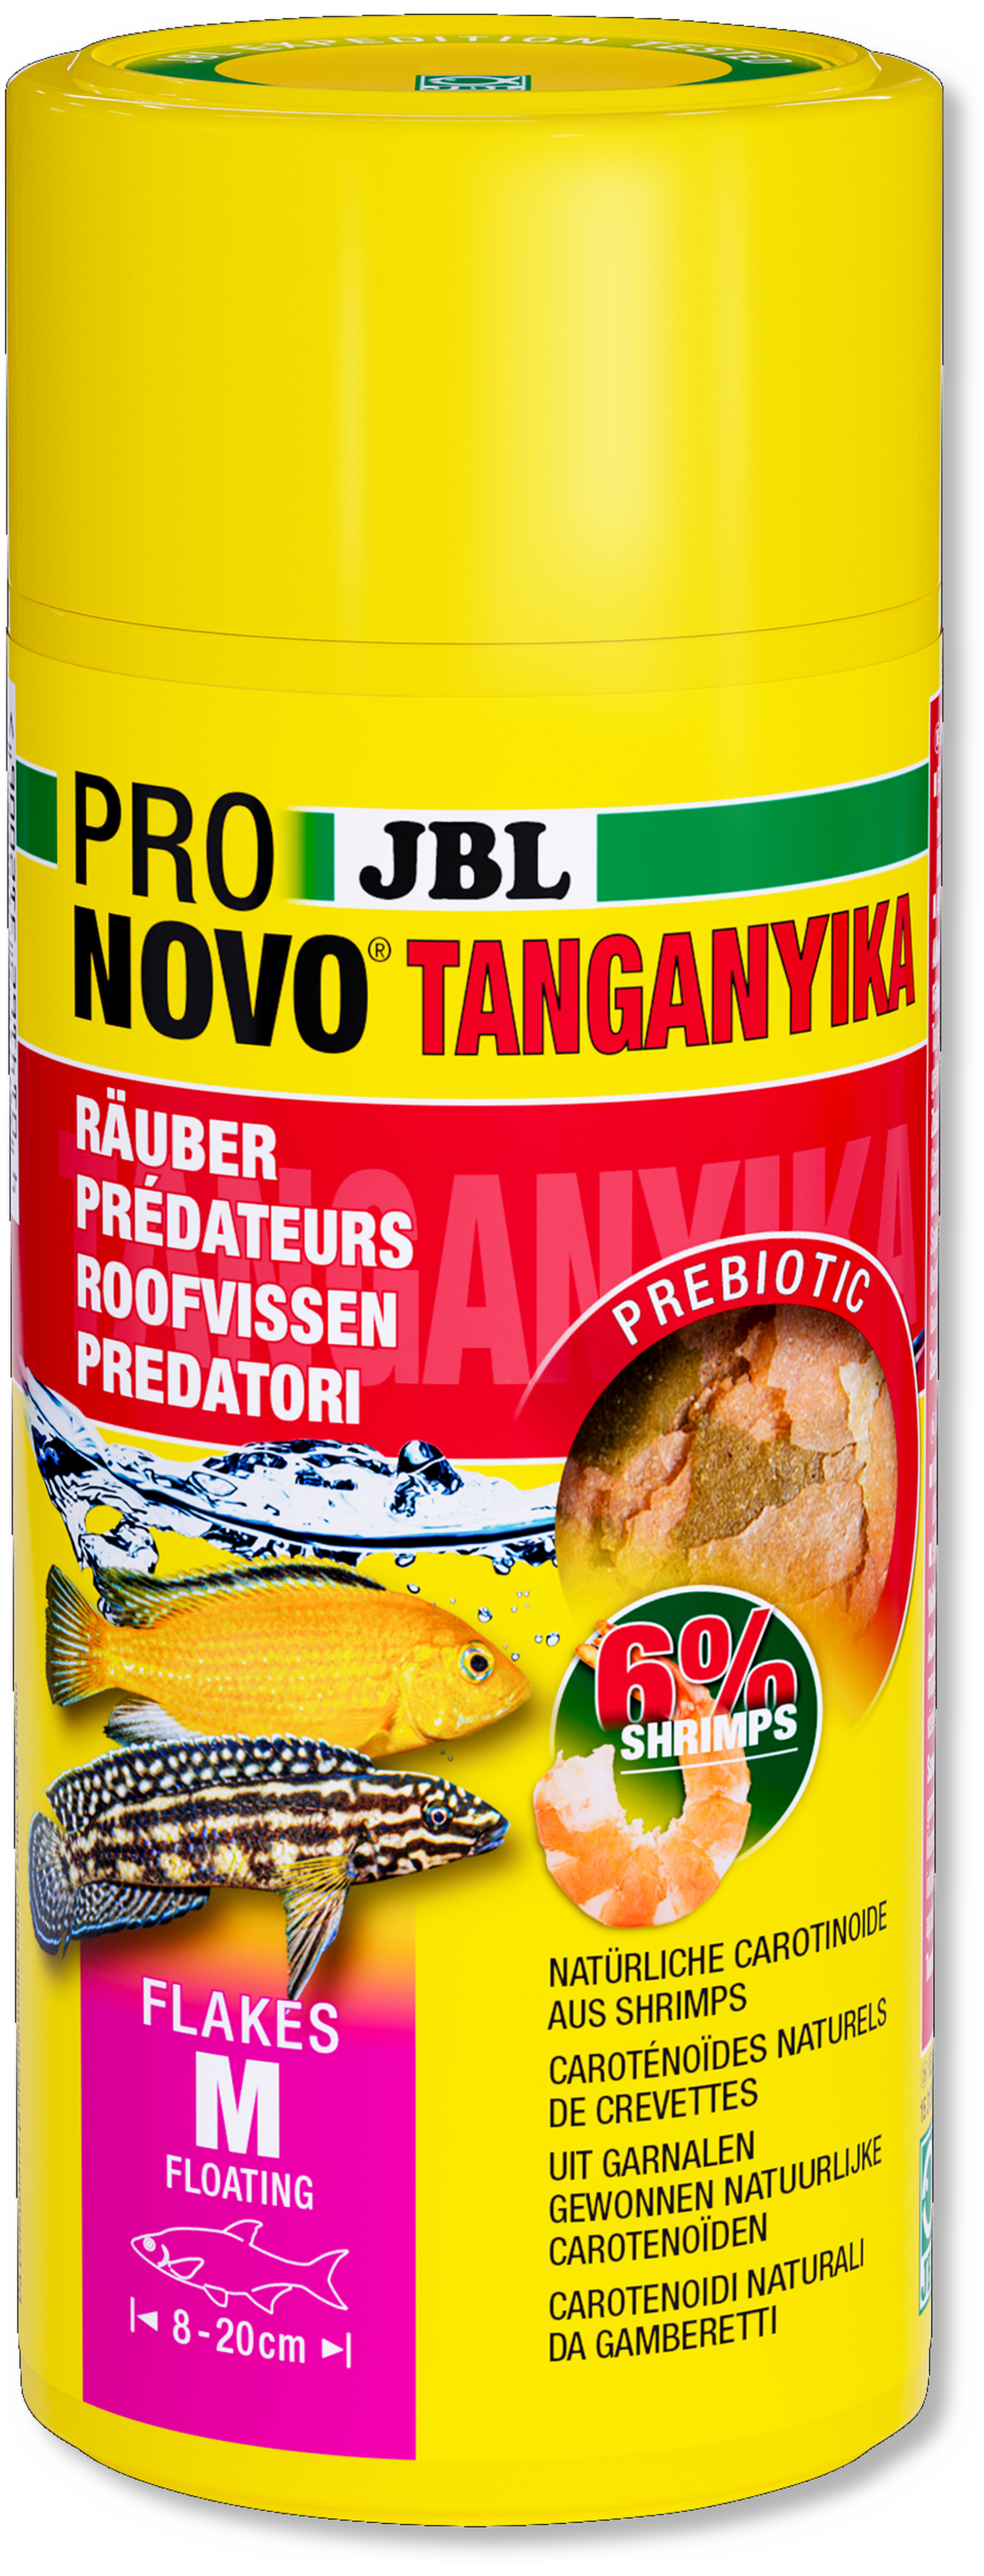 JBL ProNovoTanganjika Flakes M